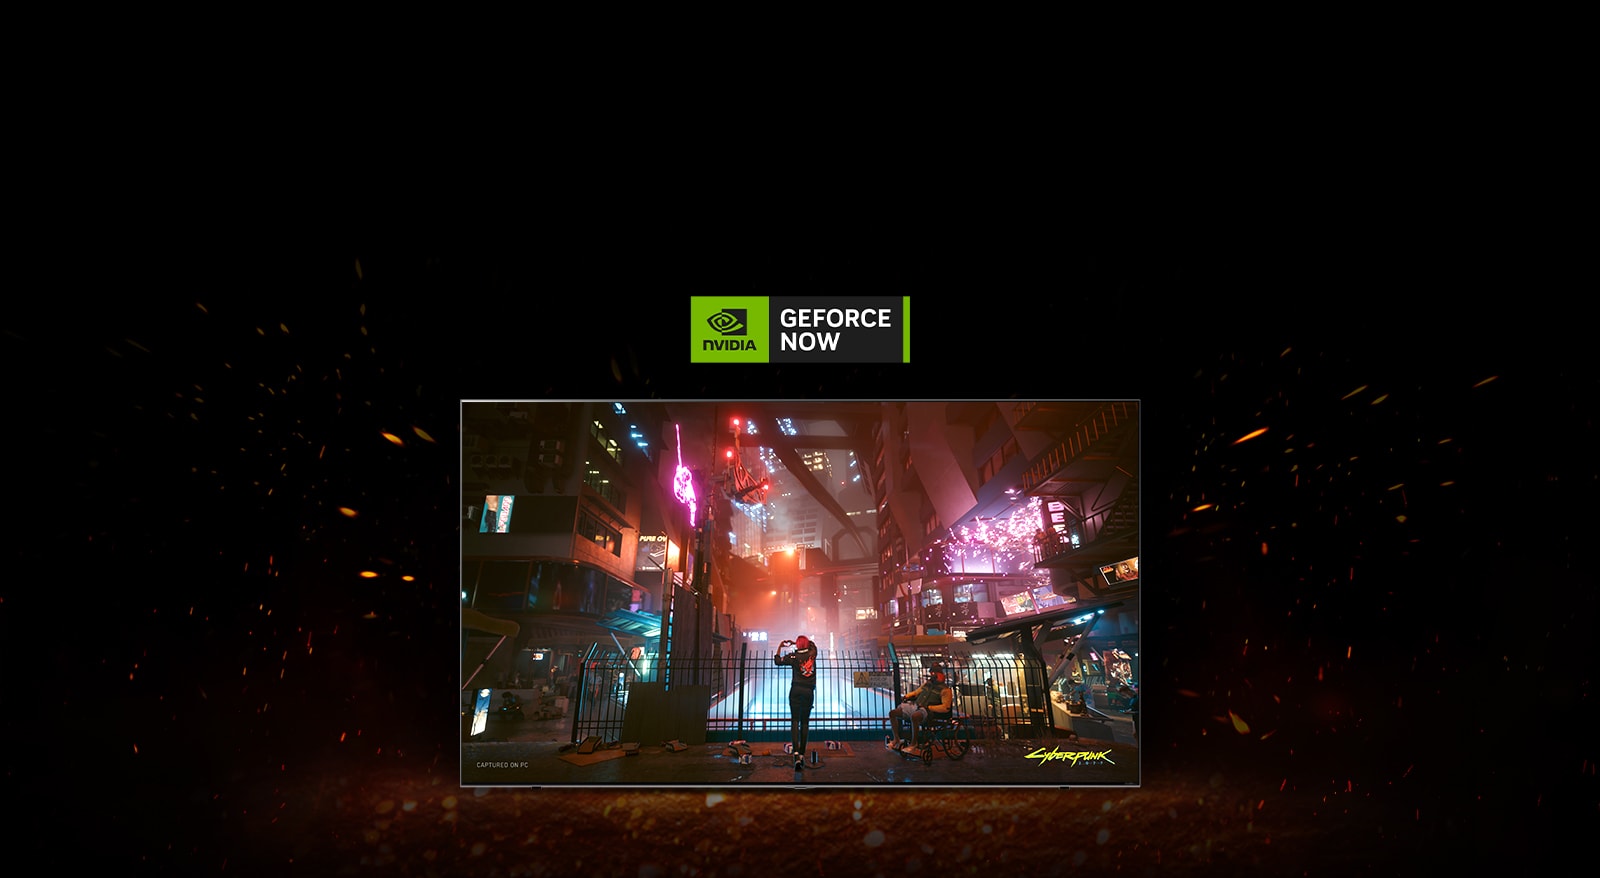 Hay chispas de llamas alrededor del televisor y en su interior se ve la pantalla de juego de Cyberpunk. Hay un logotipo de Geforce now en la parte superior del televisor.